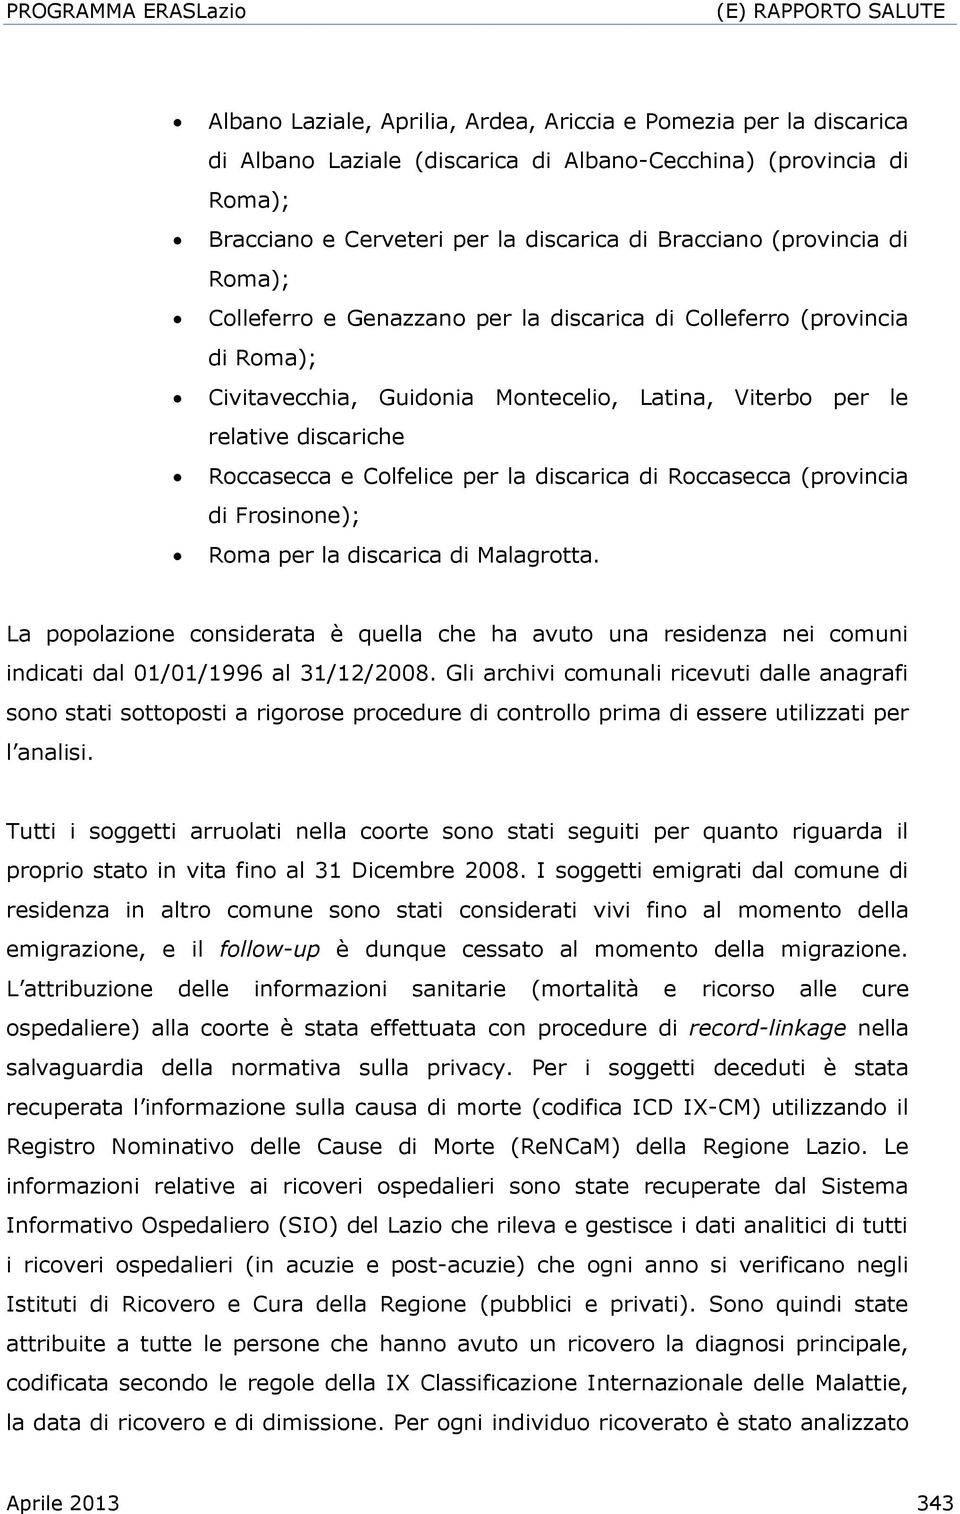 discarica di Roccasecca (provincia di Frosinone); Roma per la discarica di Malagrotta. La popolazione considerata è quella che ha avuto una residenza nei comuni indicati dal 01/01/1996 al 31/12/2008.